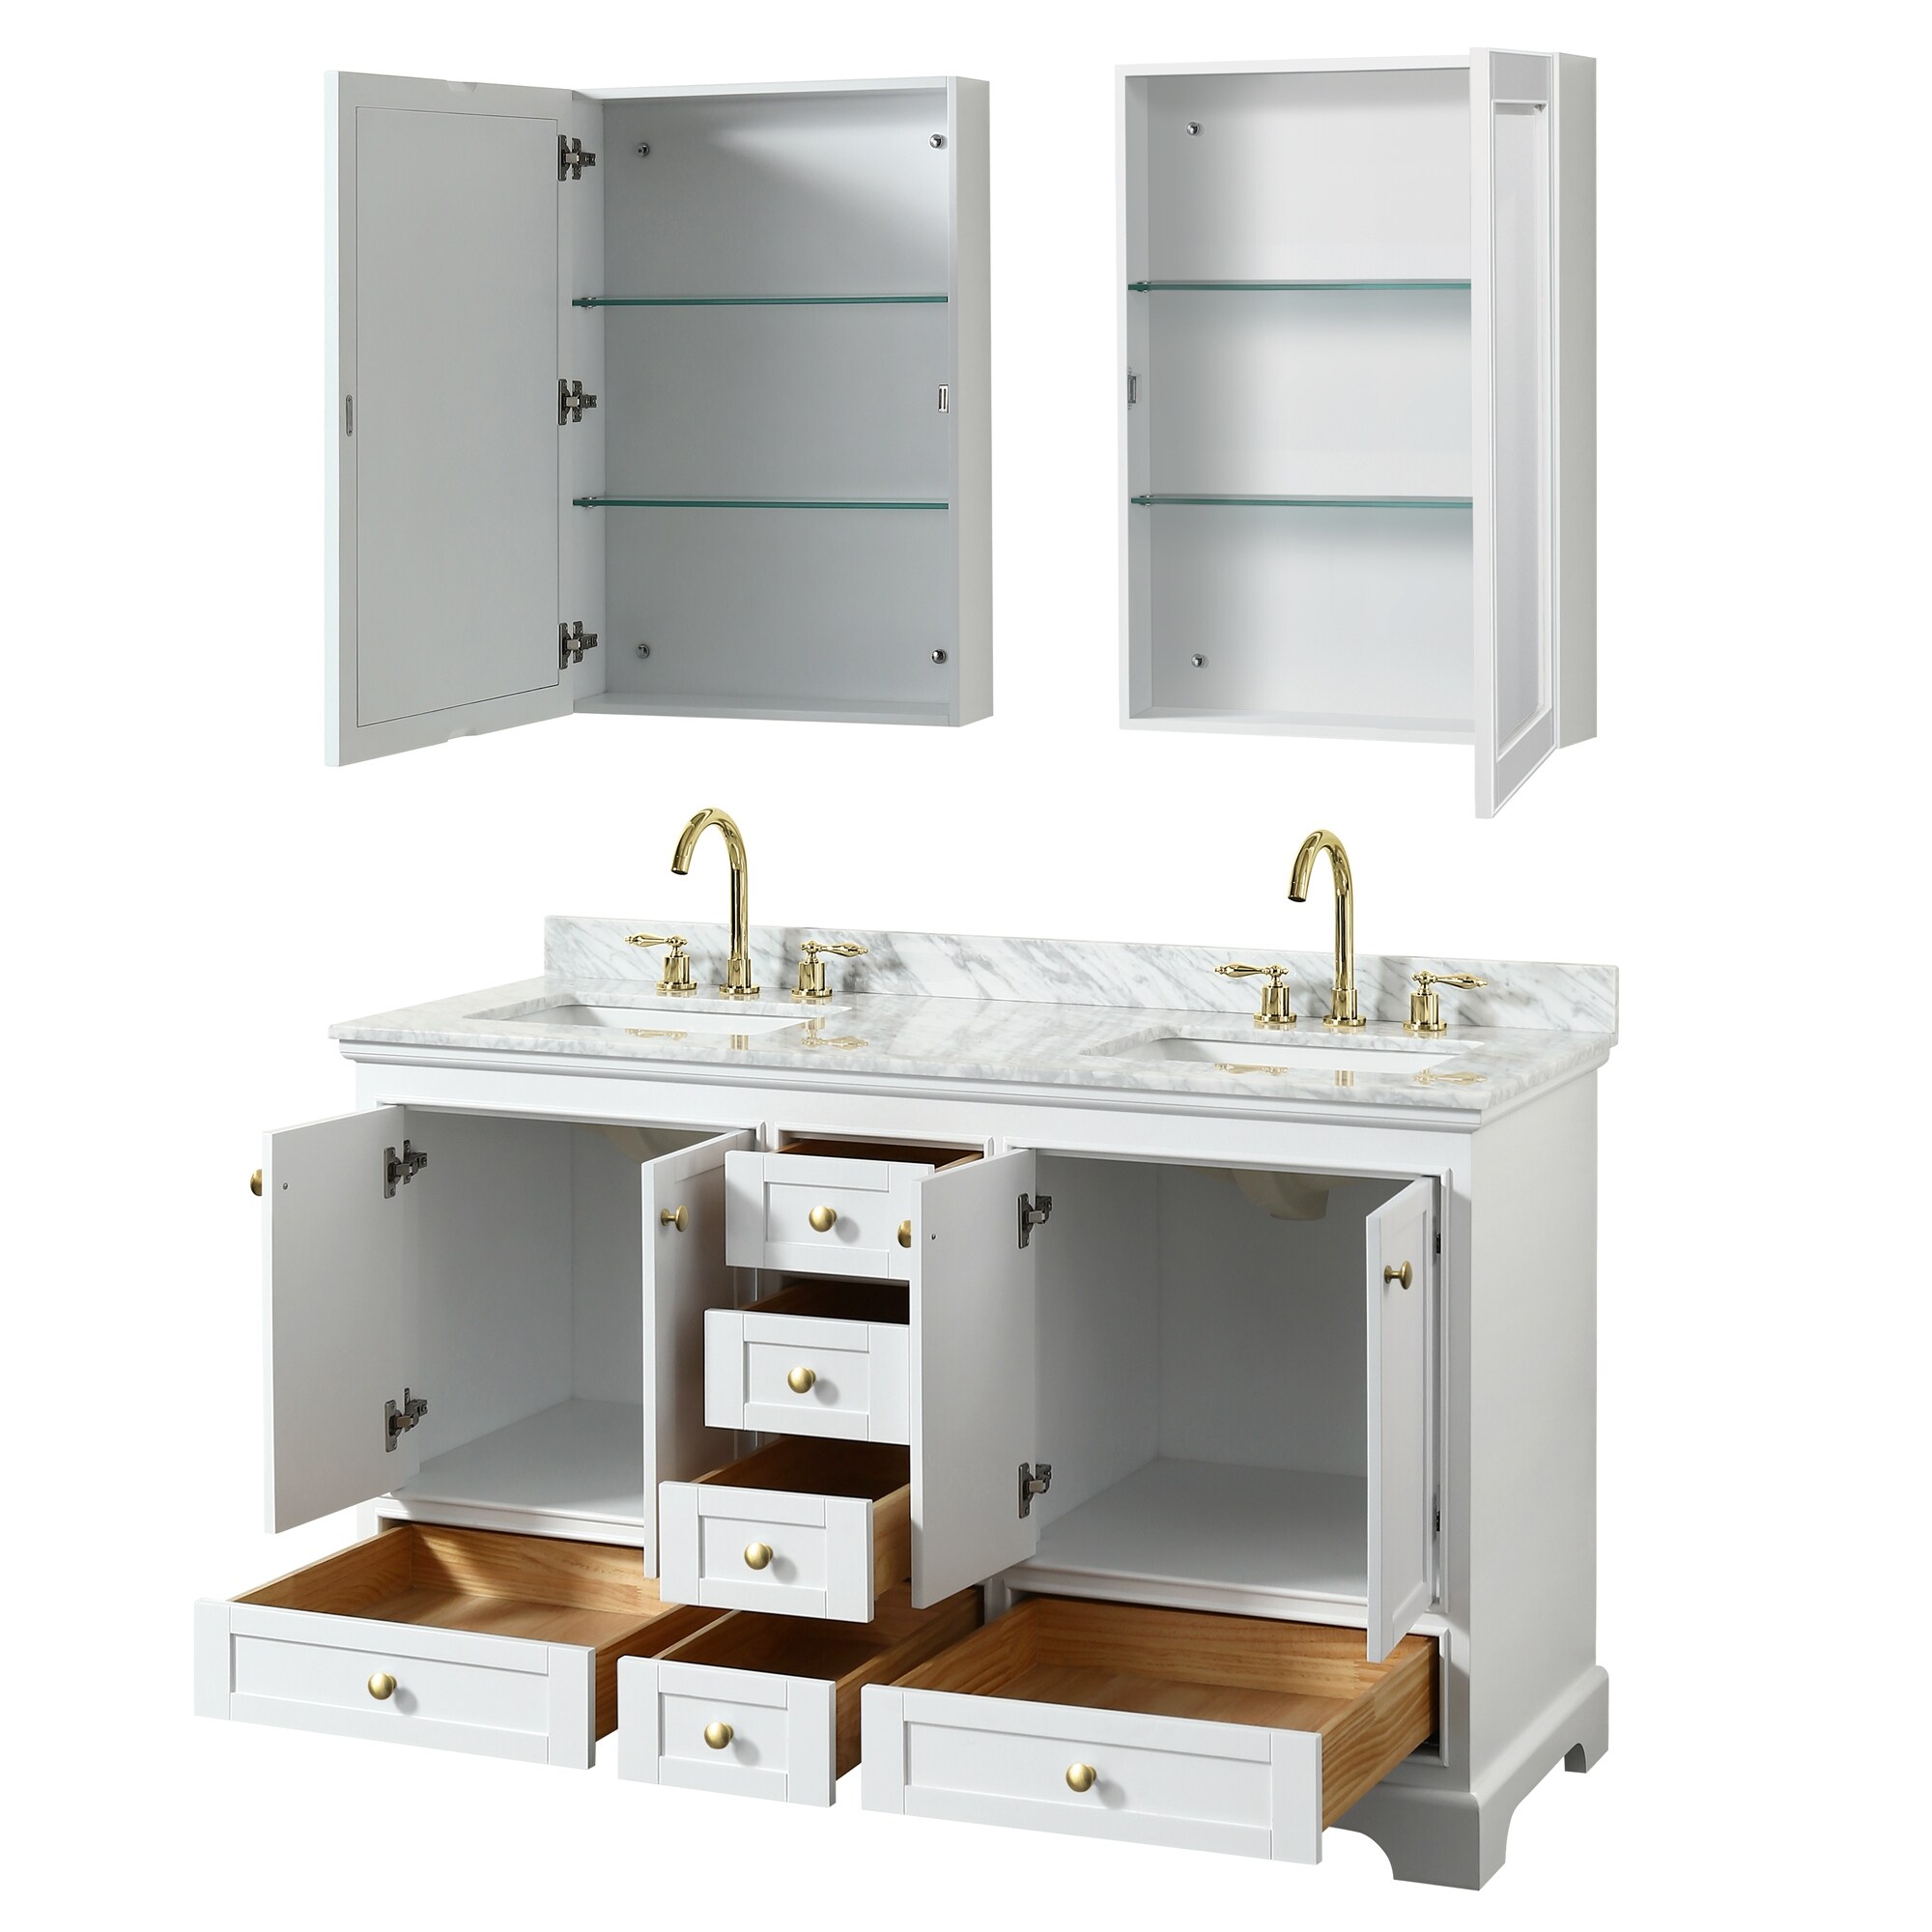 Deborah 60-inch Double Bathroom Vanity, Medicine Cabinets